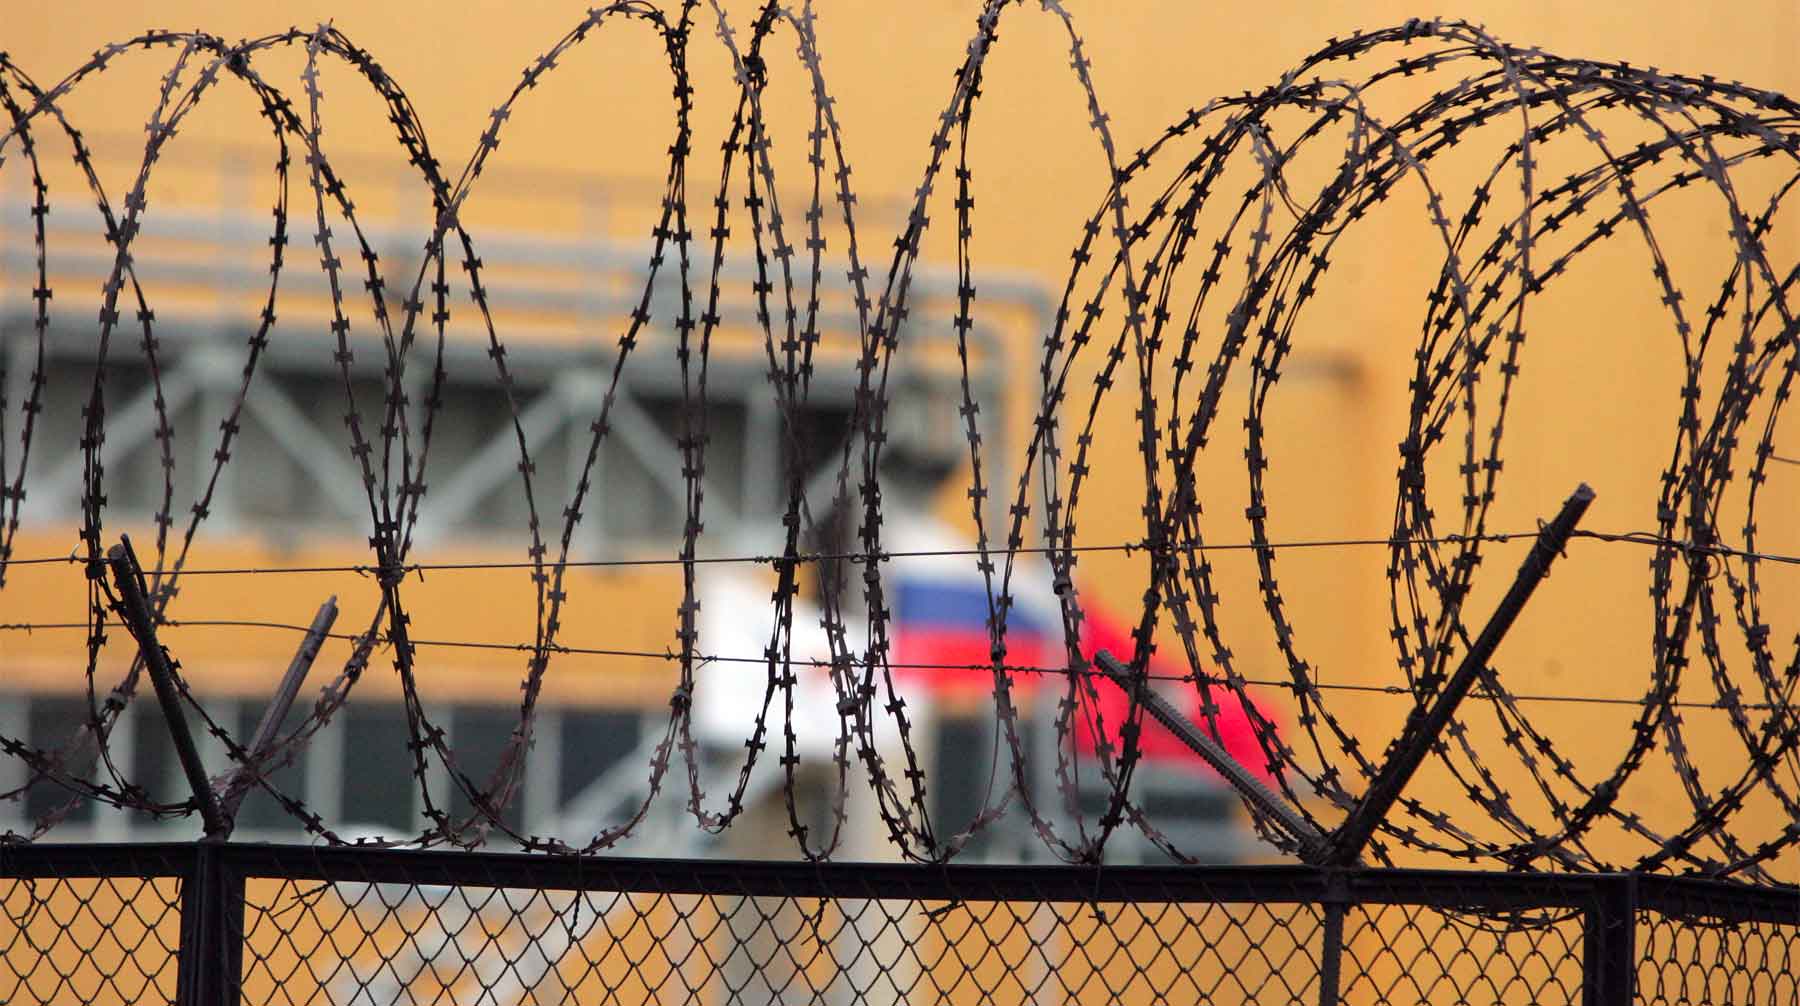 Об акции по обмену и планах по возврату заключенных в Россию данных пока нет, заявил Валентин Рыбин Фото: © GLOBALLOOK press / Viktor Chernov